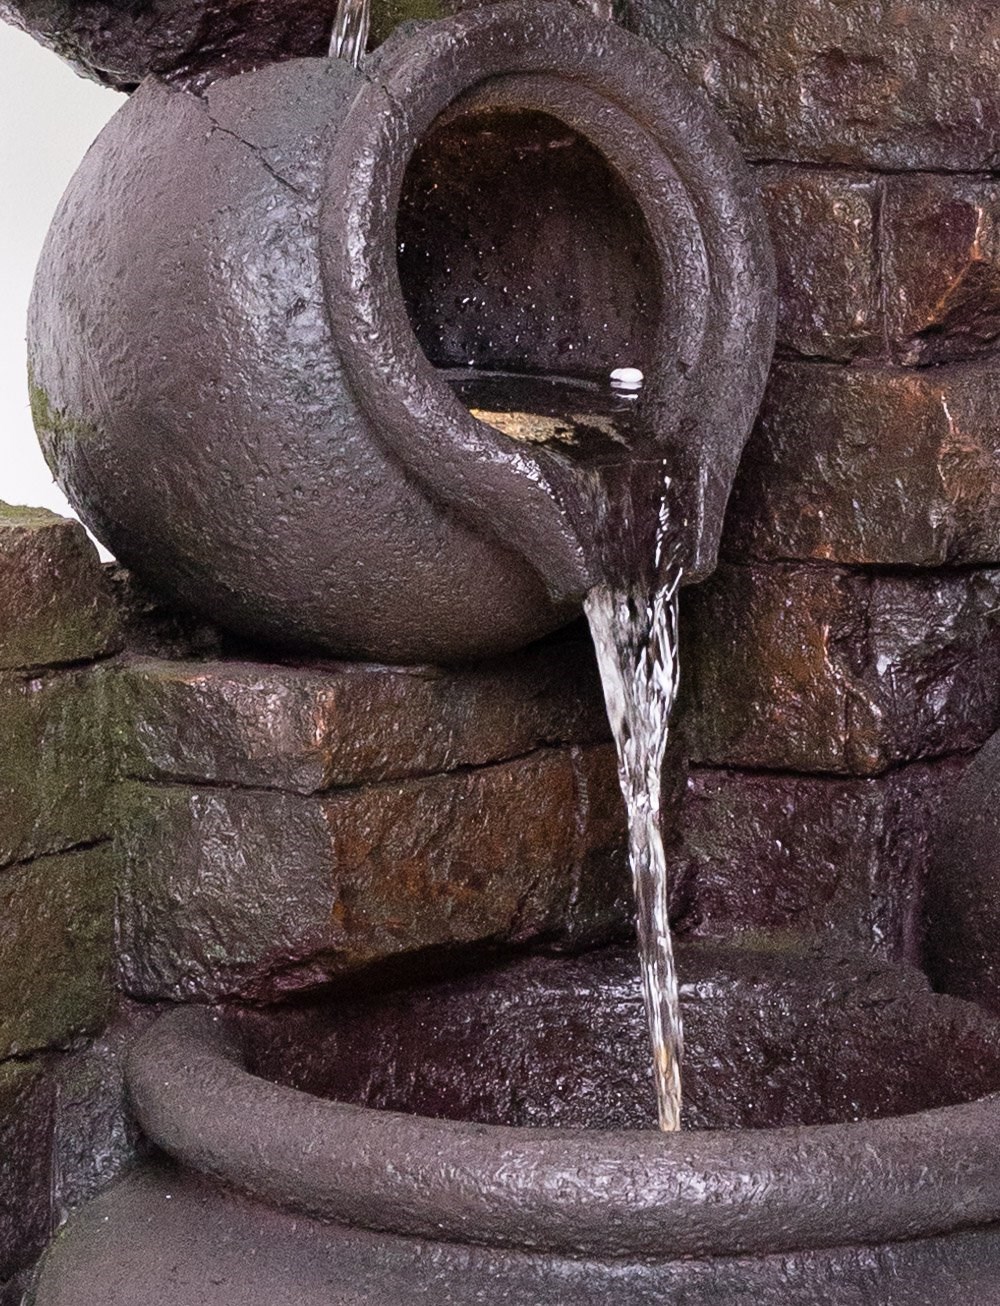 H120cm York 3-Tier Cascading Jars Water Feature & Planter w/ Lights | Ambienté